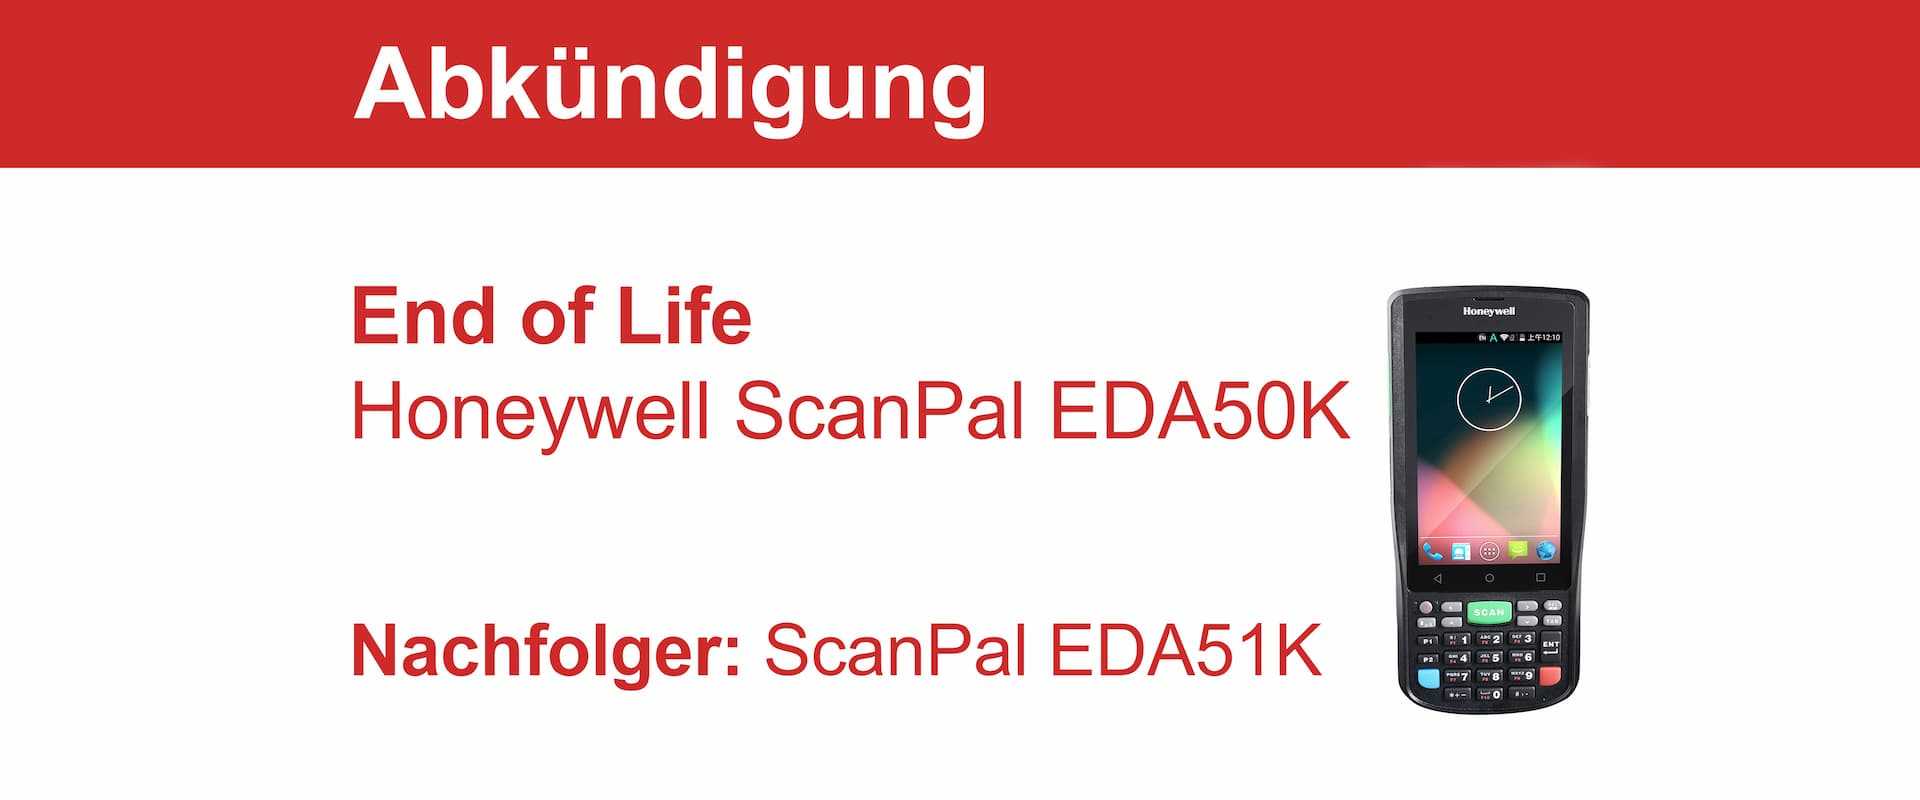 End of Life für den Honeywell ScanPal EDA50K